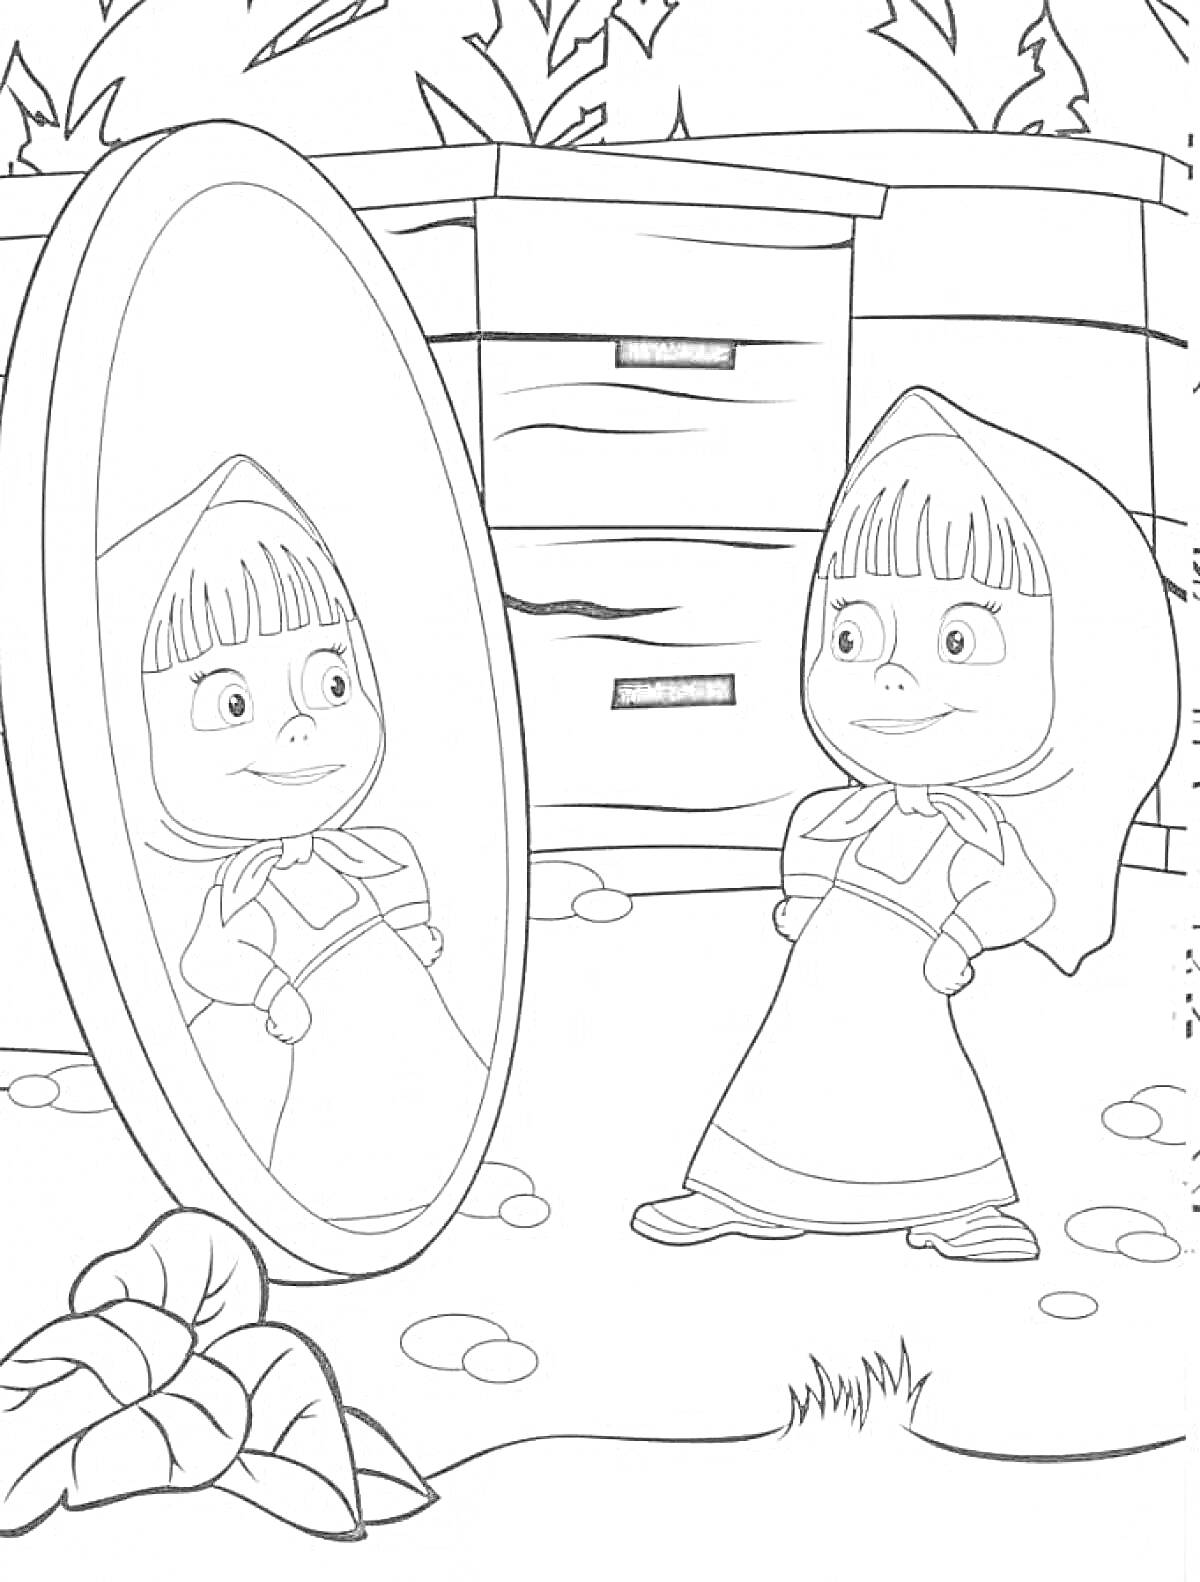 Маша смотрит на своё отражение в зеркале возле домика